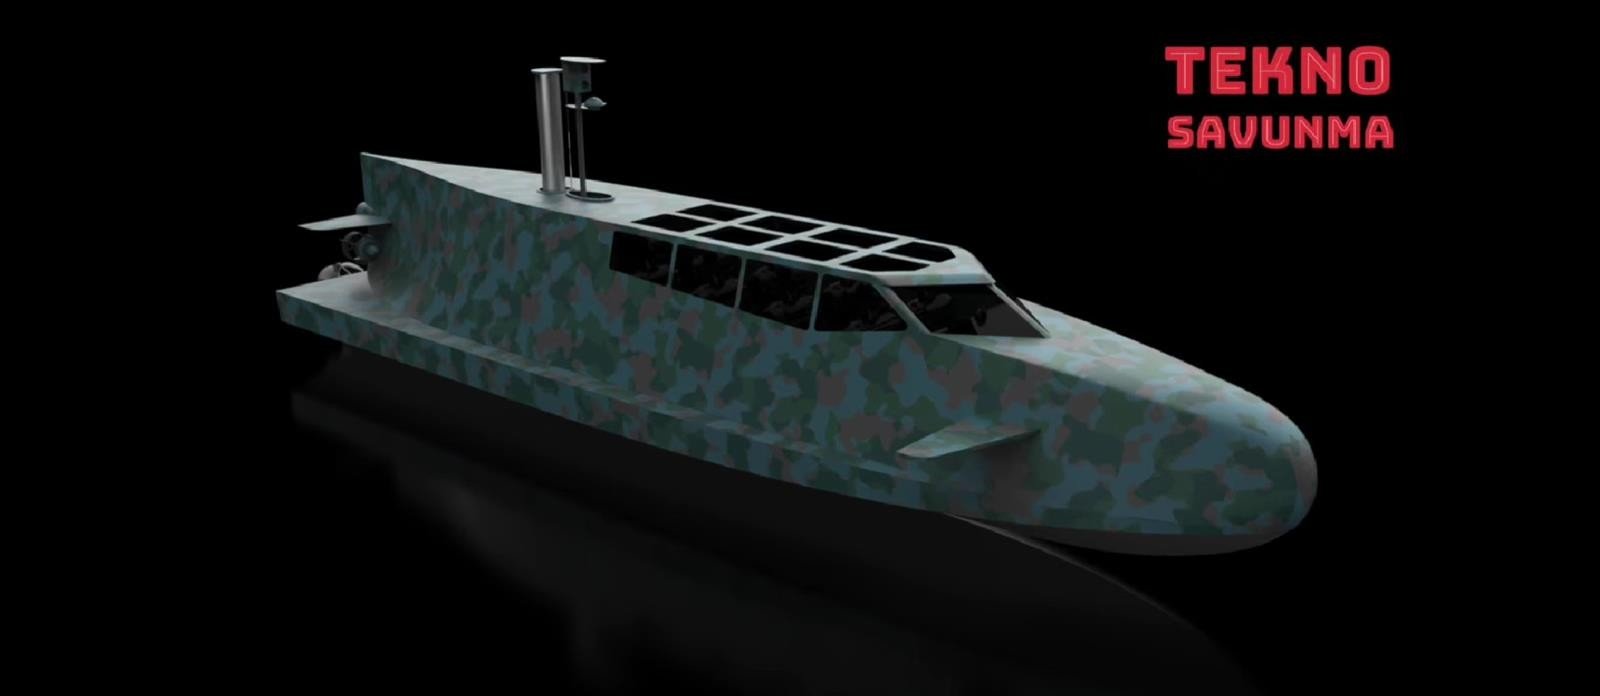 potencjalny okręt dla tureckich sił specjalnych, KM-STC10